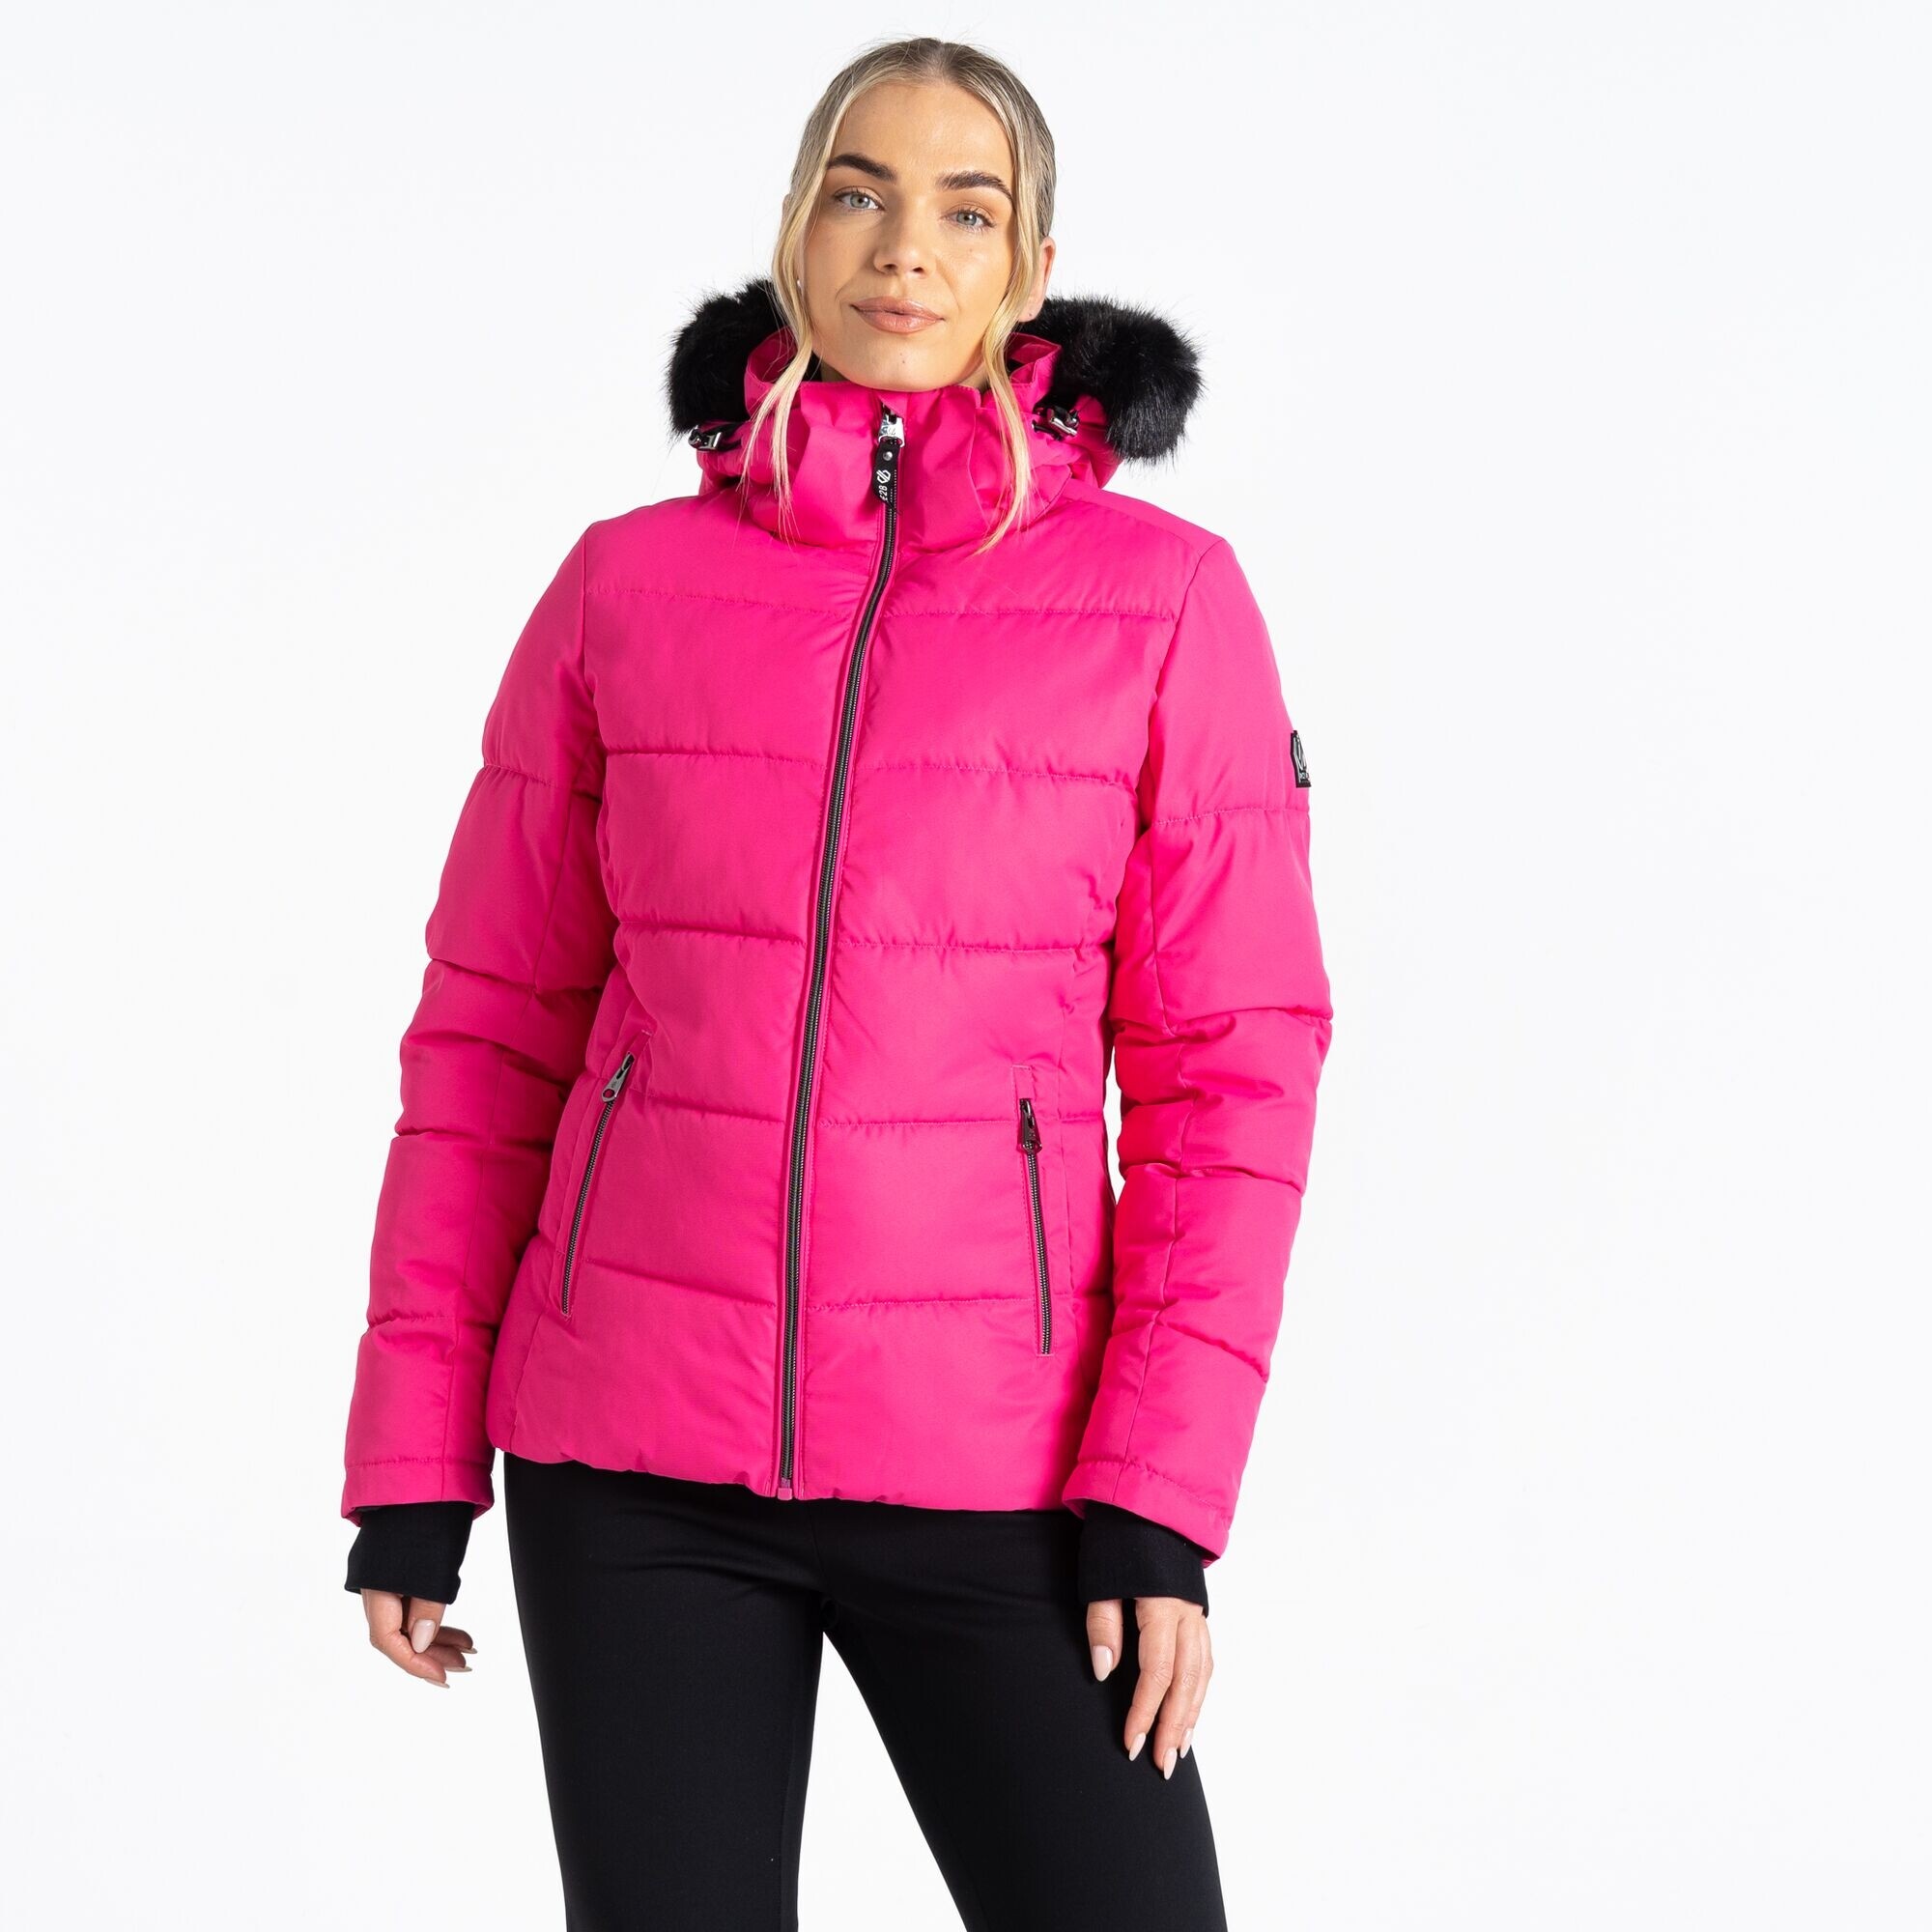 Dámská lyžařská bunda Glamorize IV DWP576-829 neon růžová - Dare2B 38